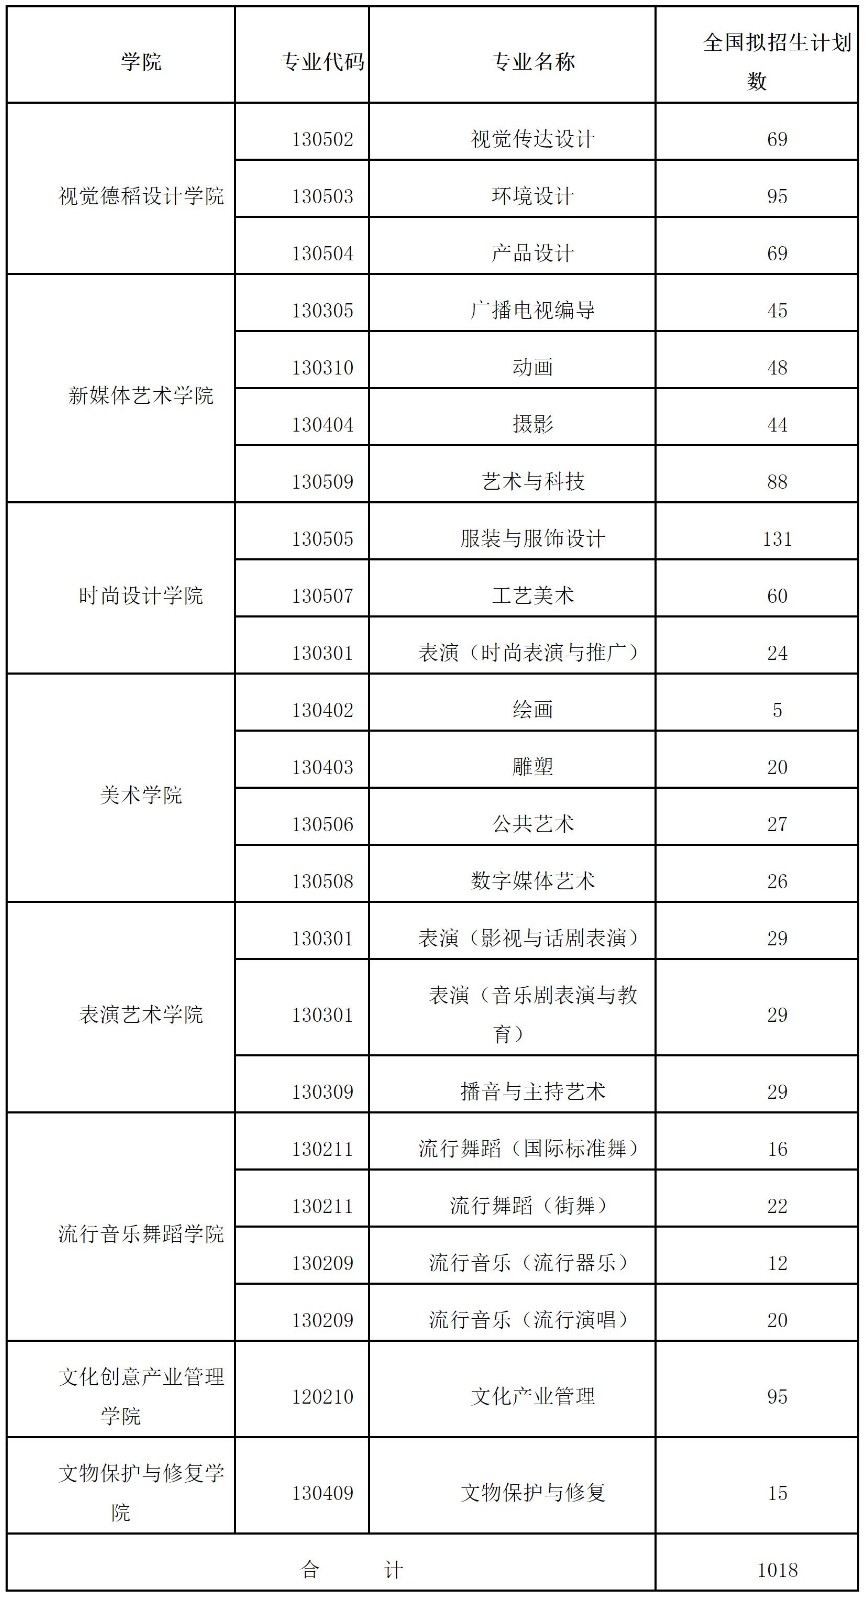 22022年上海视觉艺术学院舞蹈类、音乐类专业招生简章、招生计划、考试及报名办法、学校地址